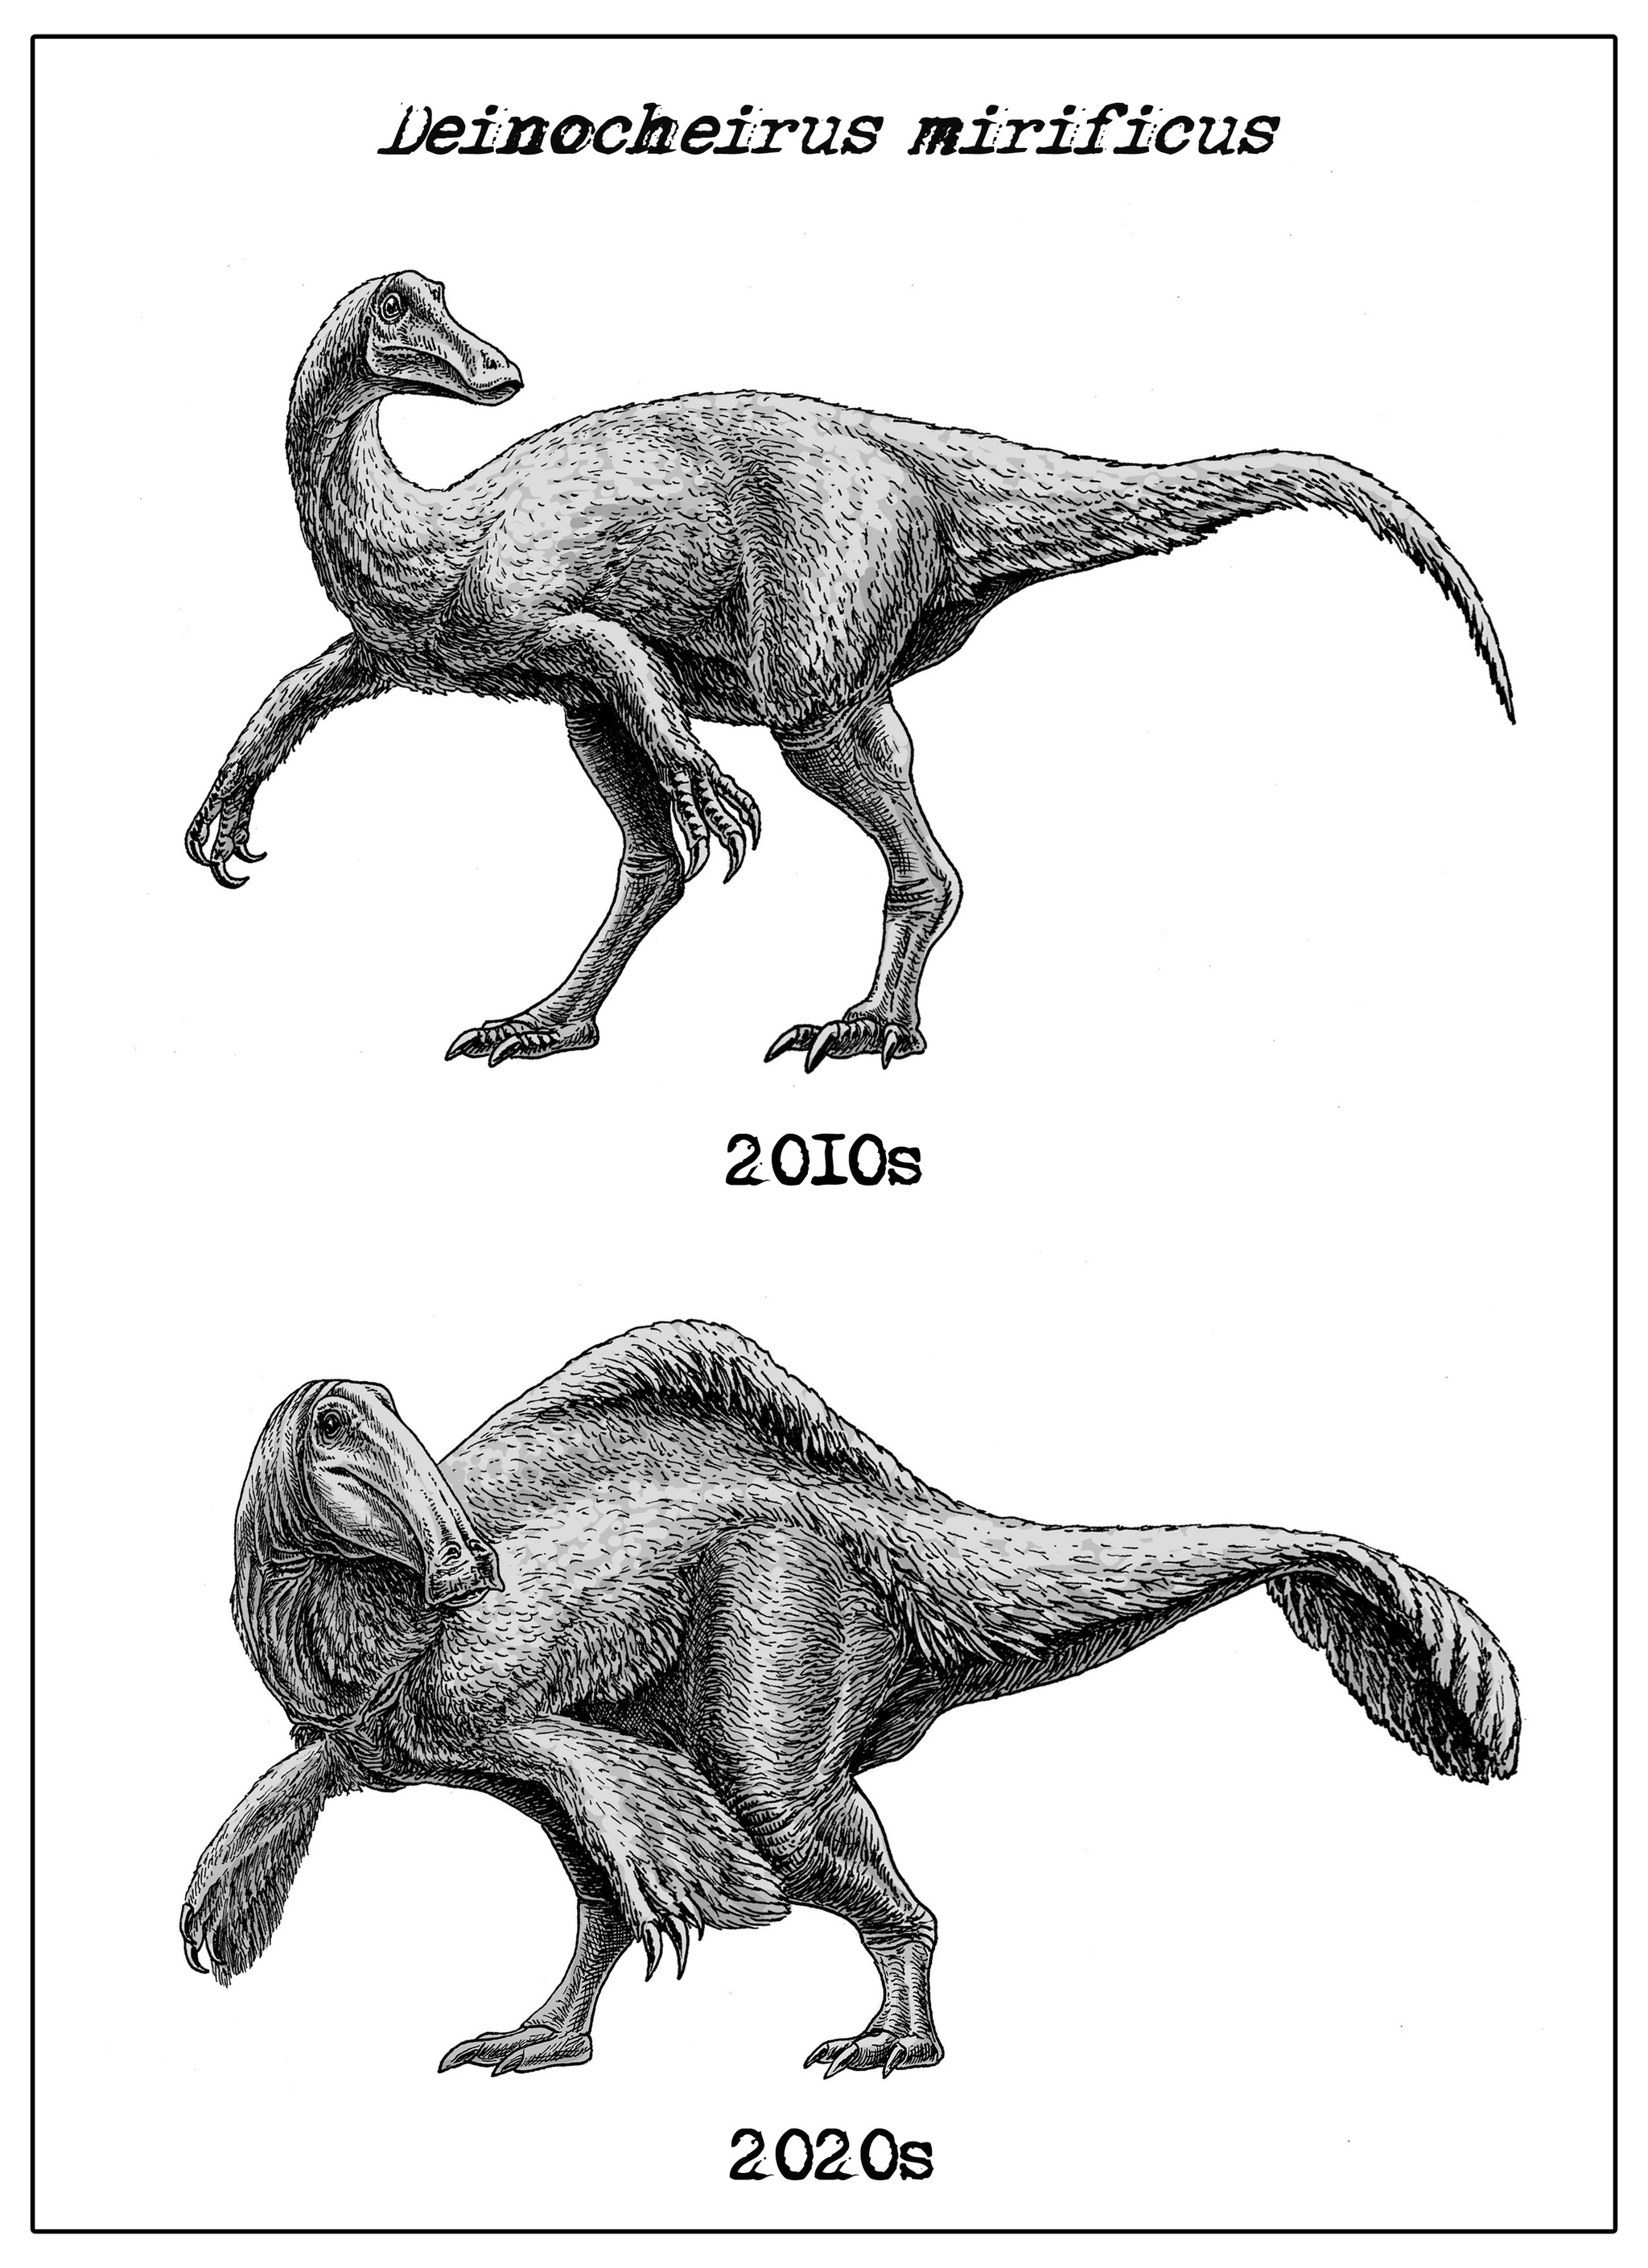 100 000 изображений по запросу Большие динозавры доступны в рамках роялти-фри лицензии